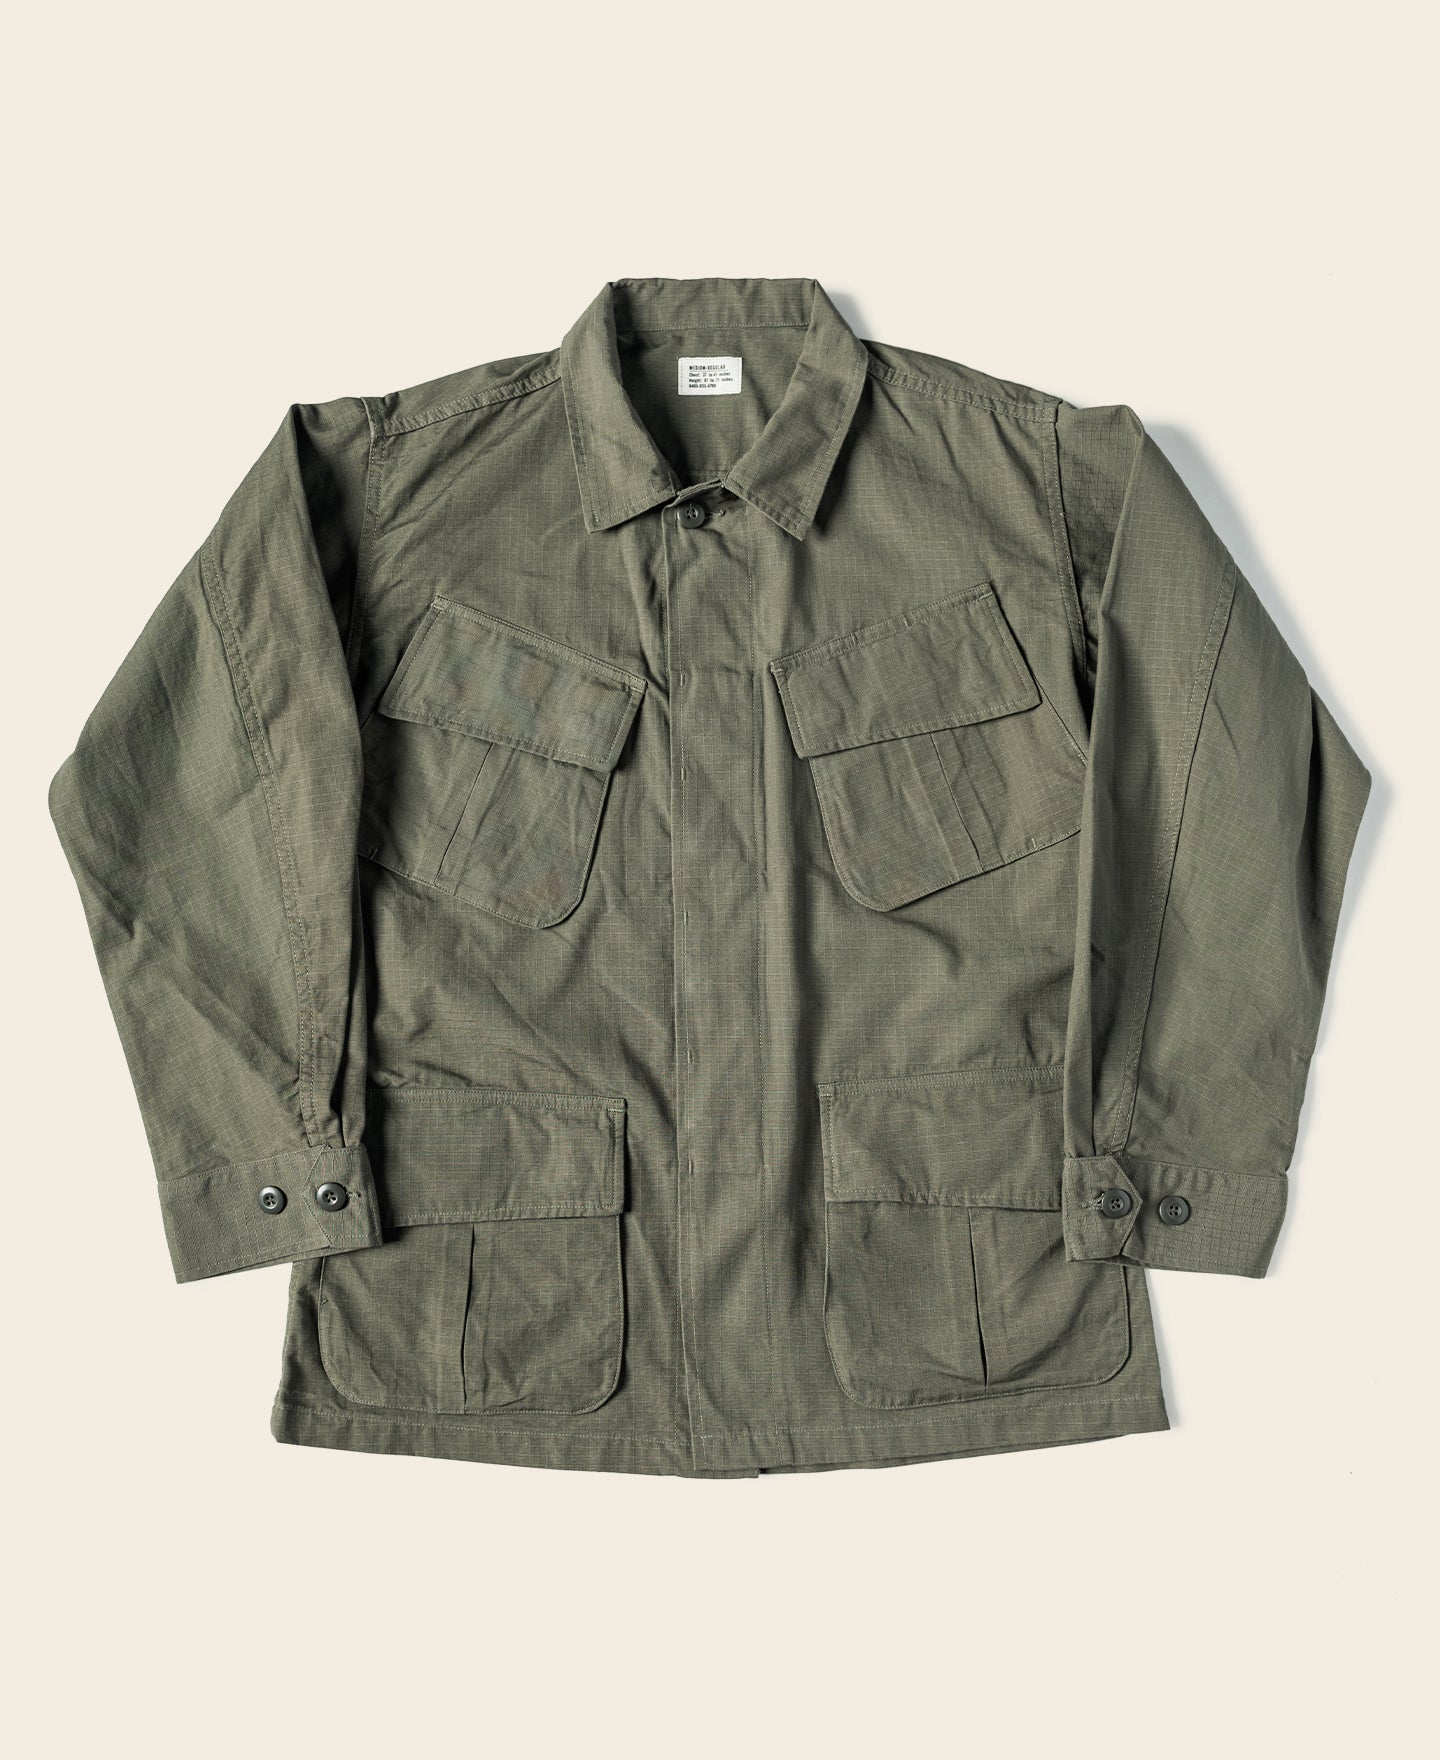 9,340円【60s】 US ARMY Jungle Fatigue Jacket 5th